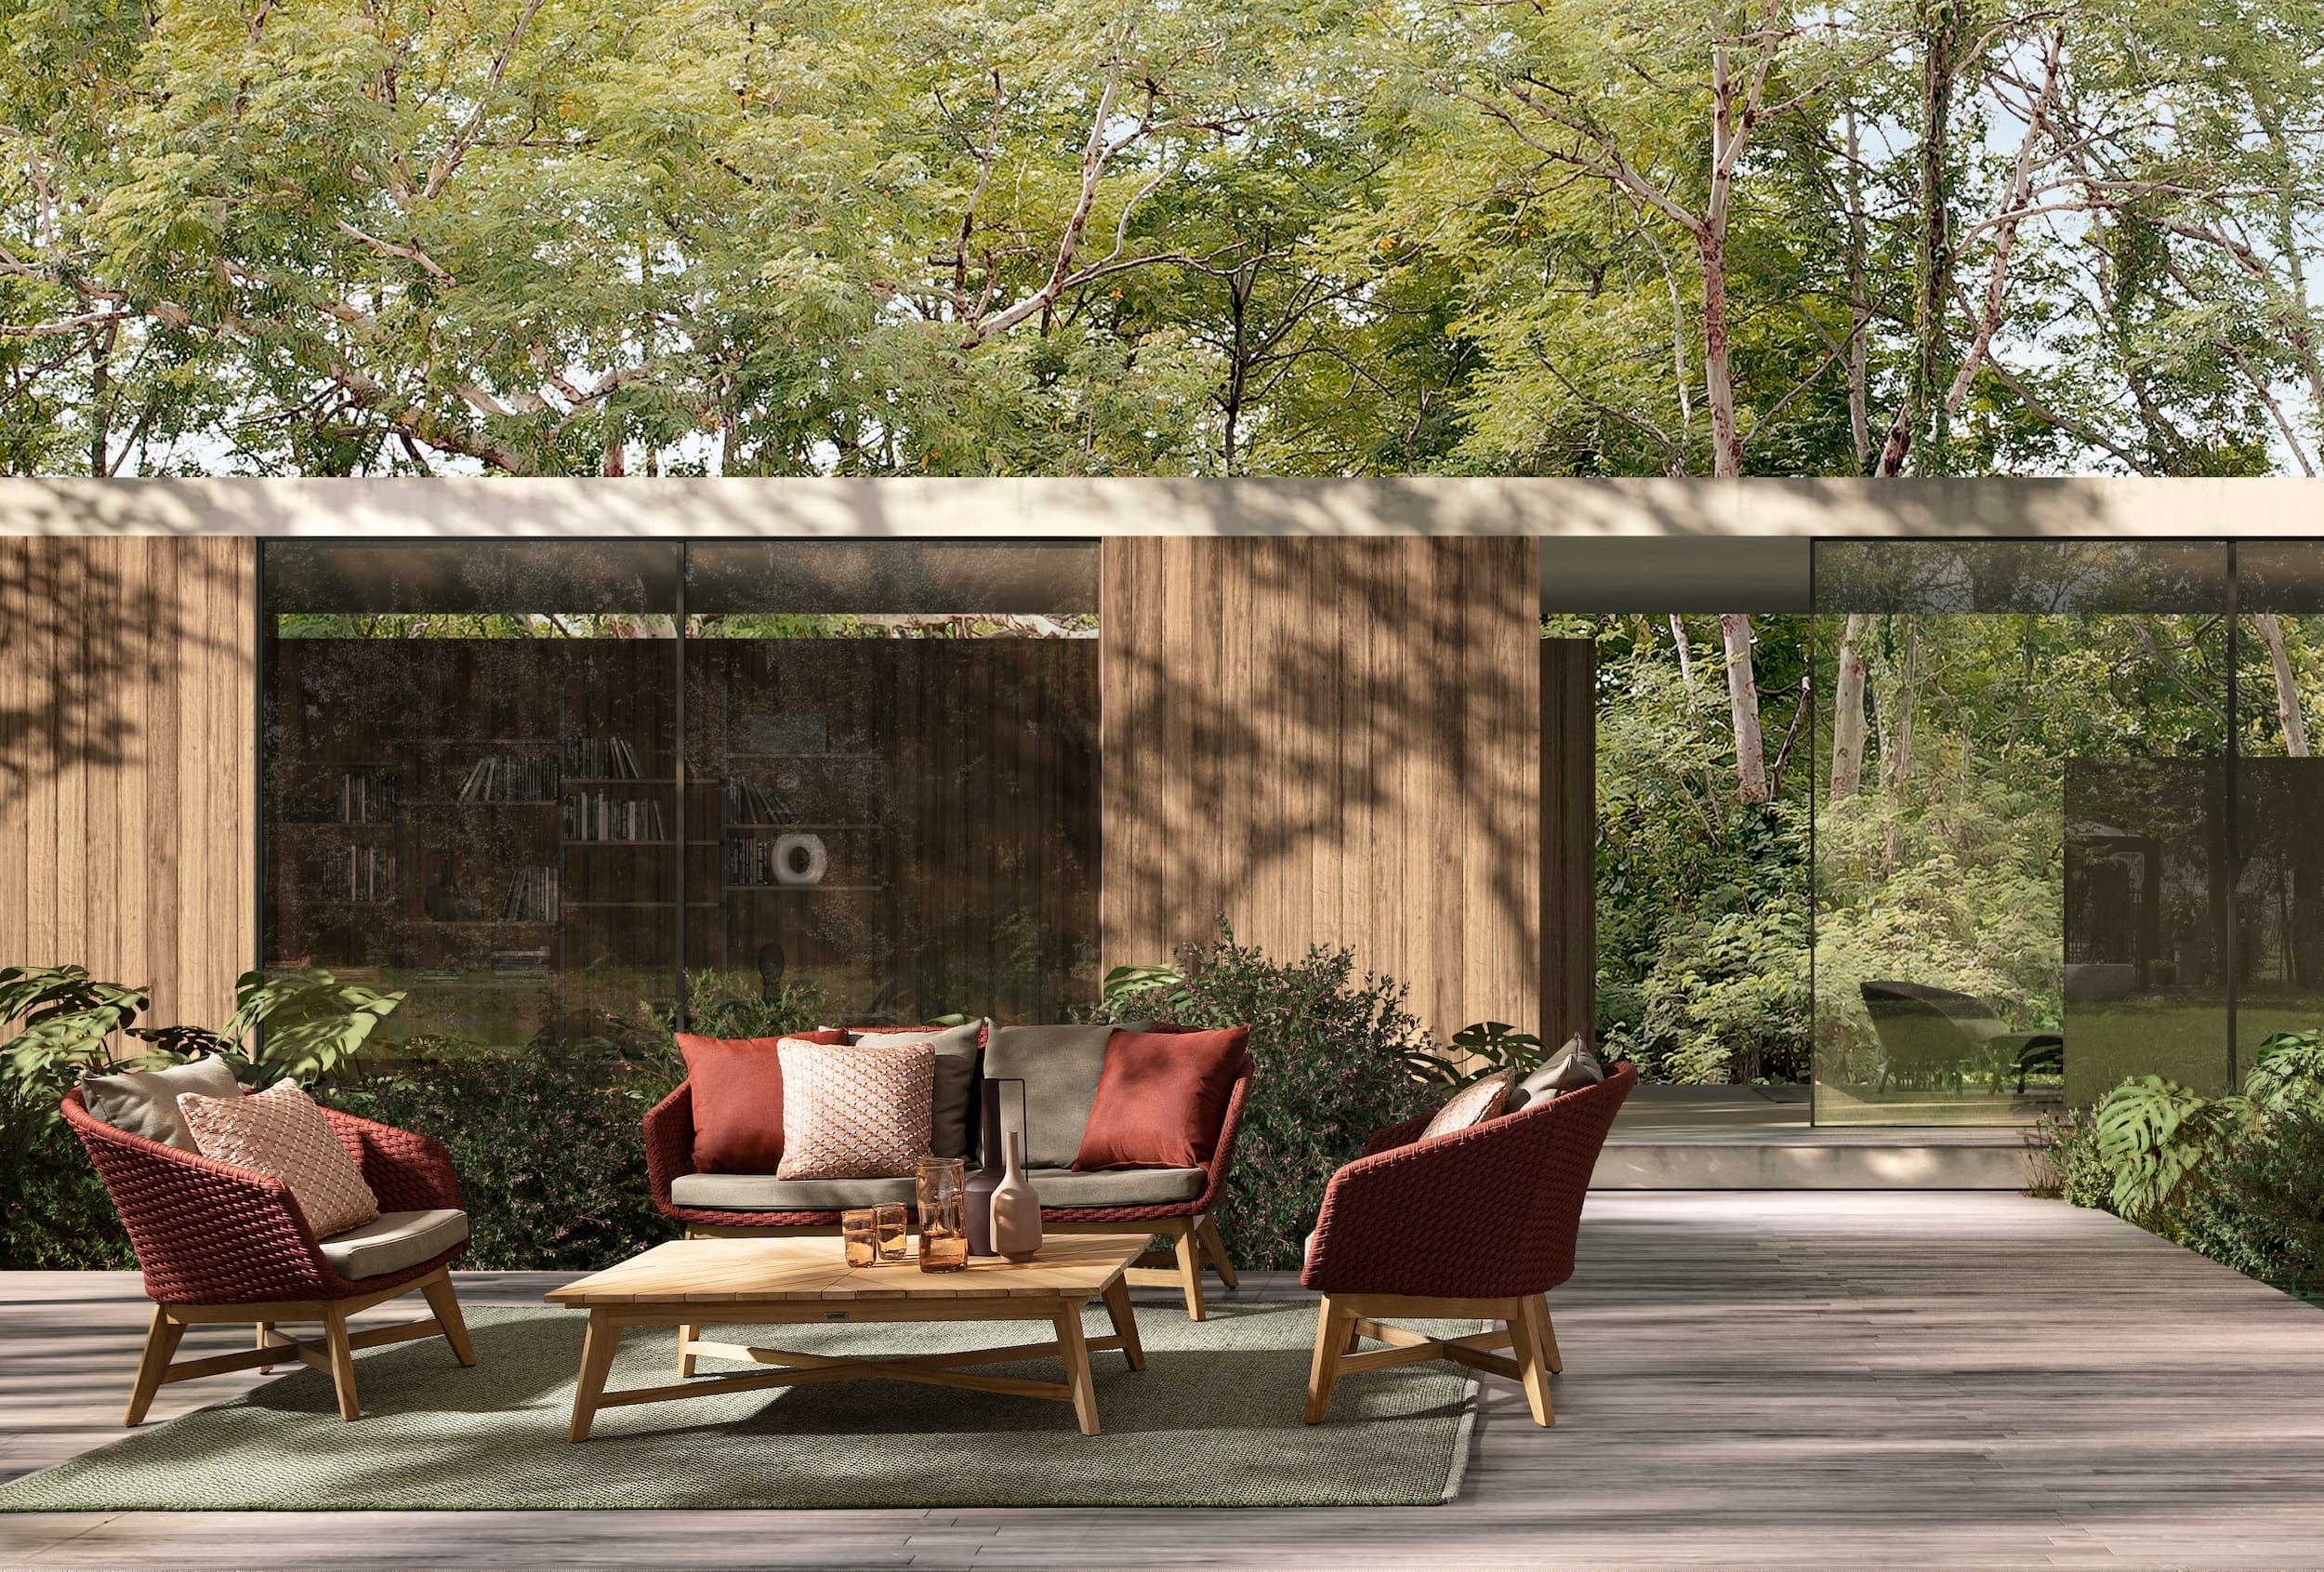 Bizzotto Canapea fixa pentru gradina / terasa, din aluminiu si lemn de tec, 2 locuri, Coachella Caramiziu / Grej / Natural, l168xA78xH77 cm